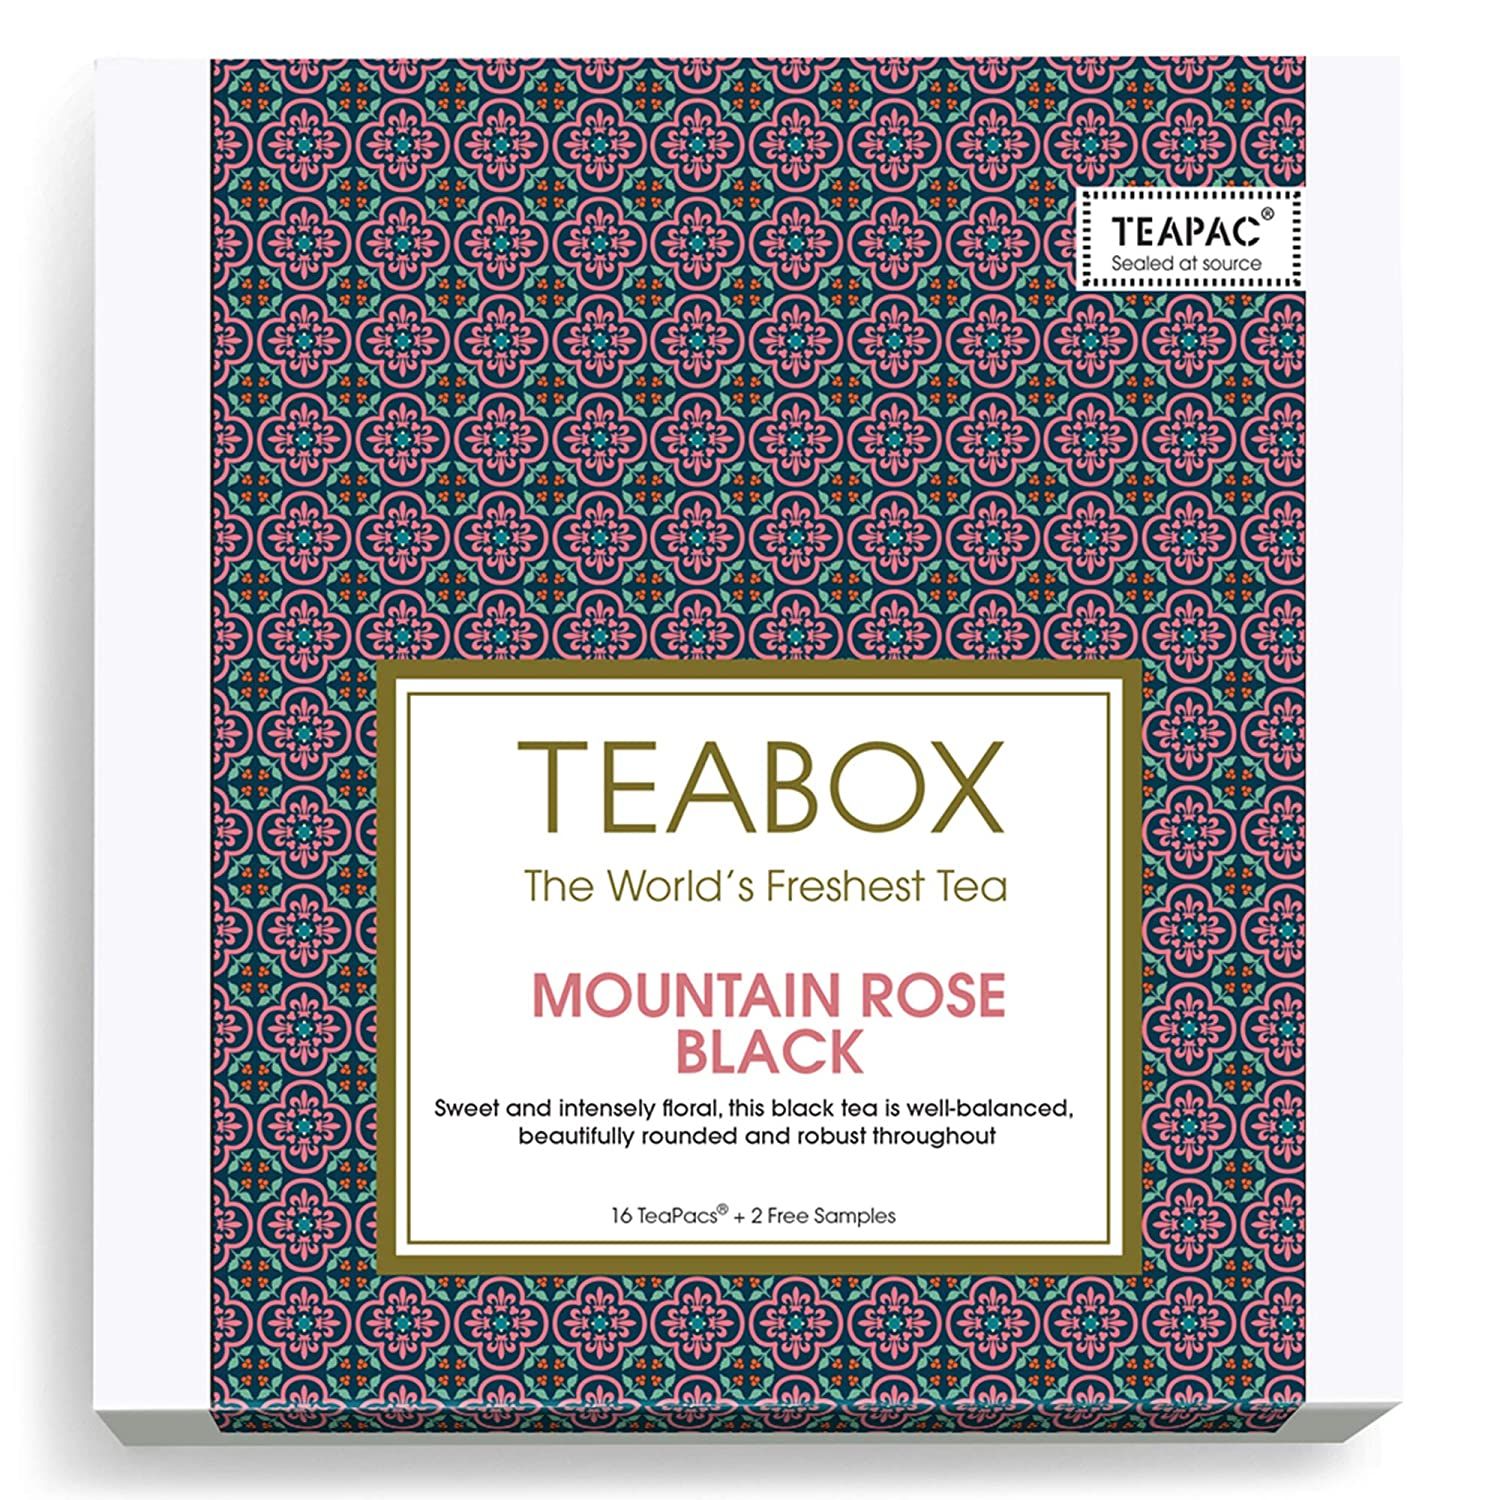 Teabox Mountain Rose Black Image